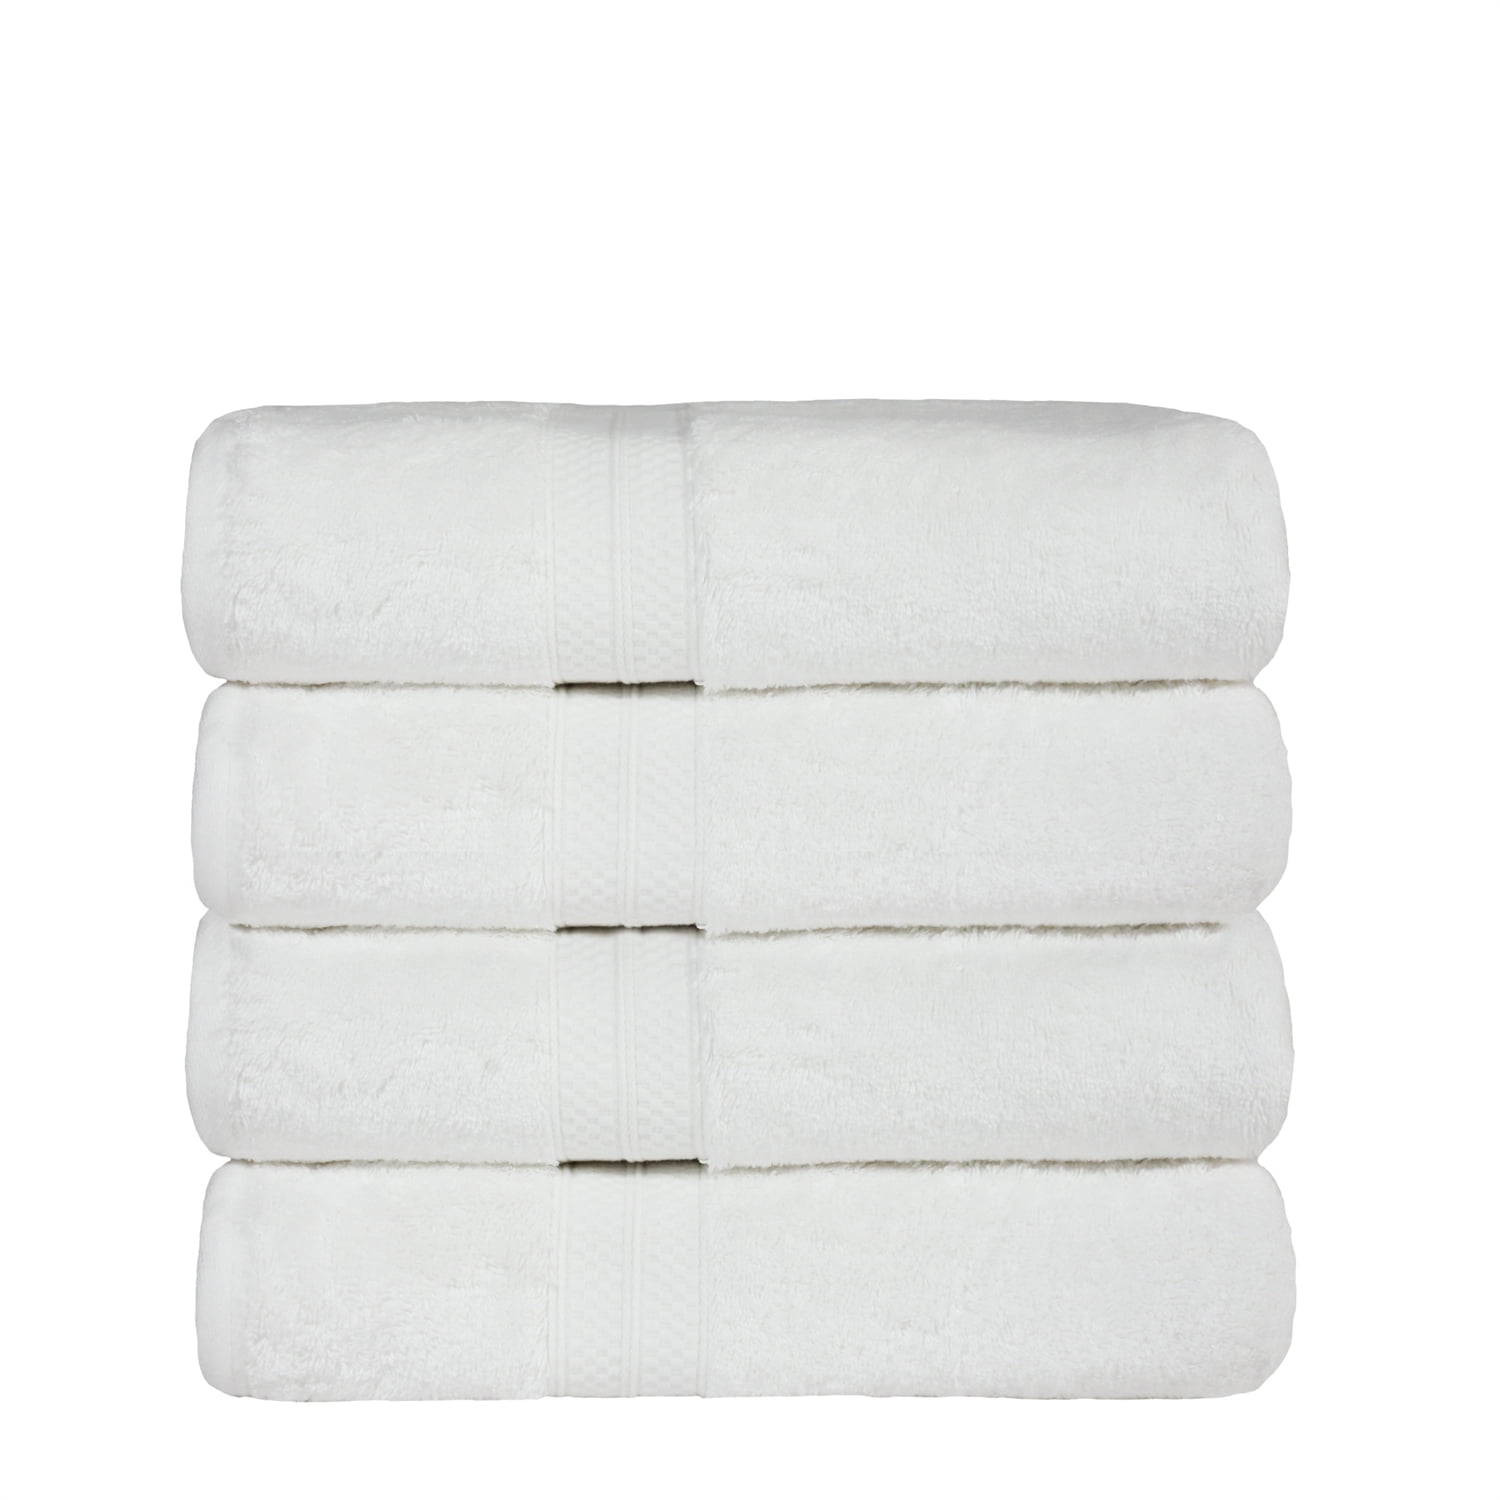 2 Pcs Bamboo Towels Hotel Quality Super Soft Hand Bath Towel Bath Sheet 600  GSM